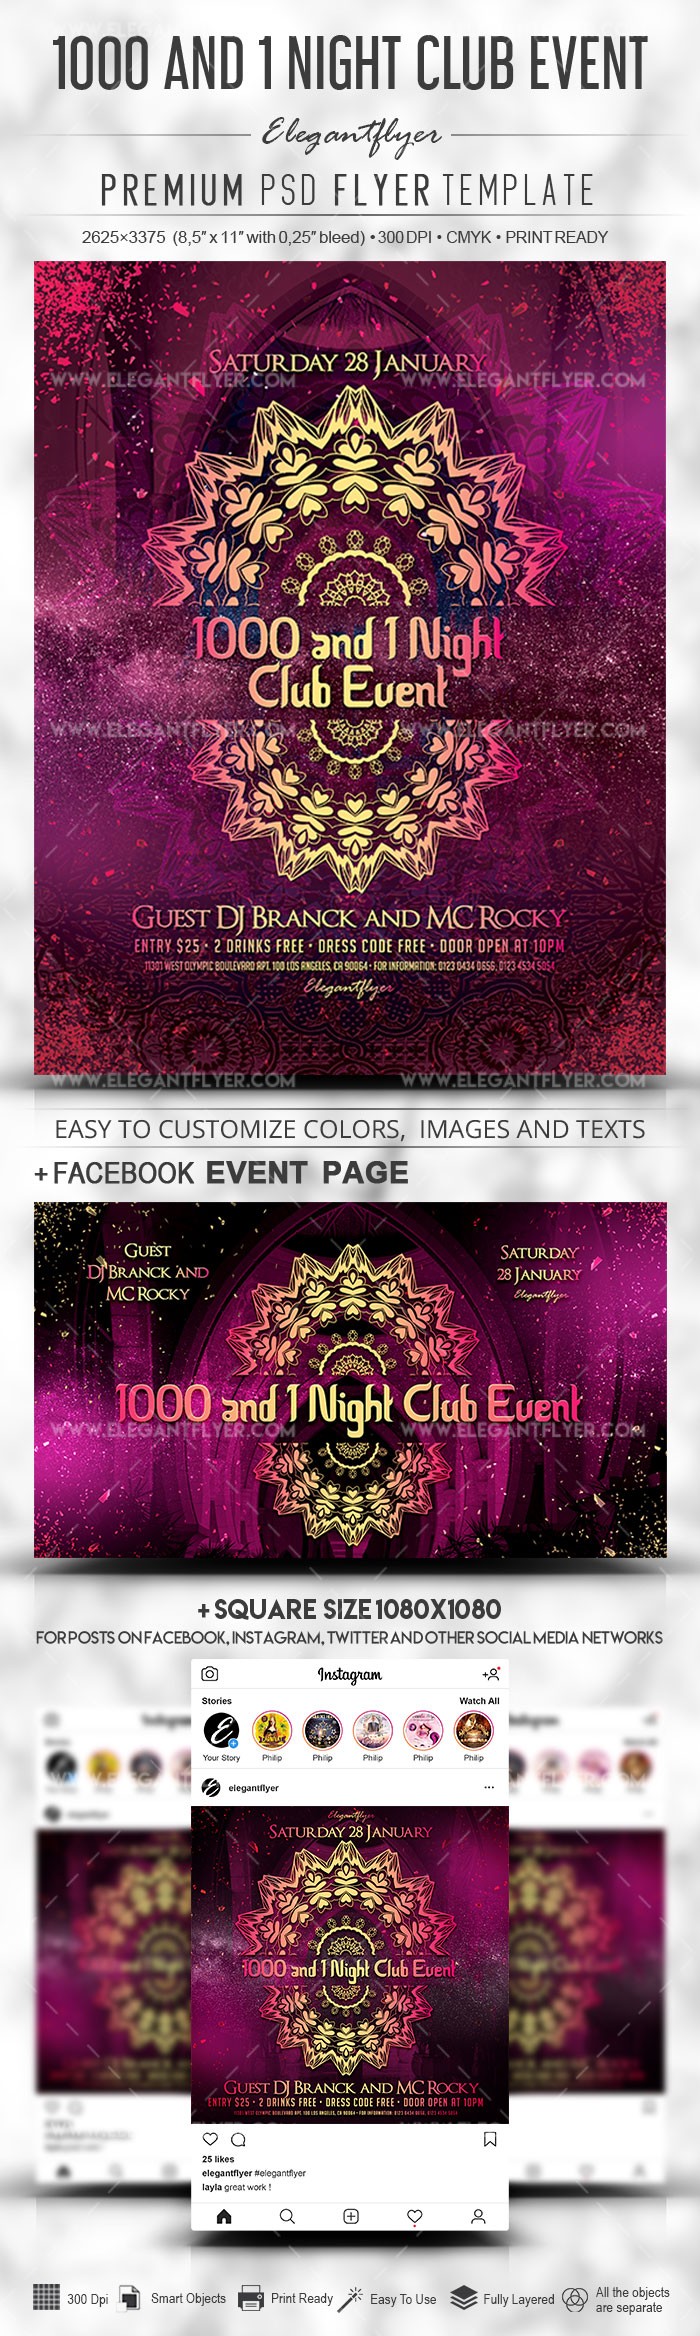 1000 und 1 Nacht Club Event by ElegantFlyer